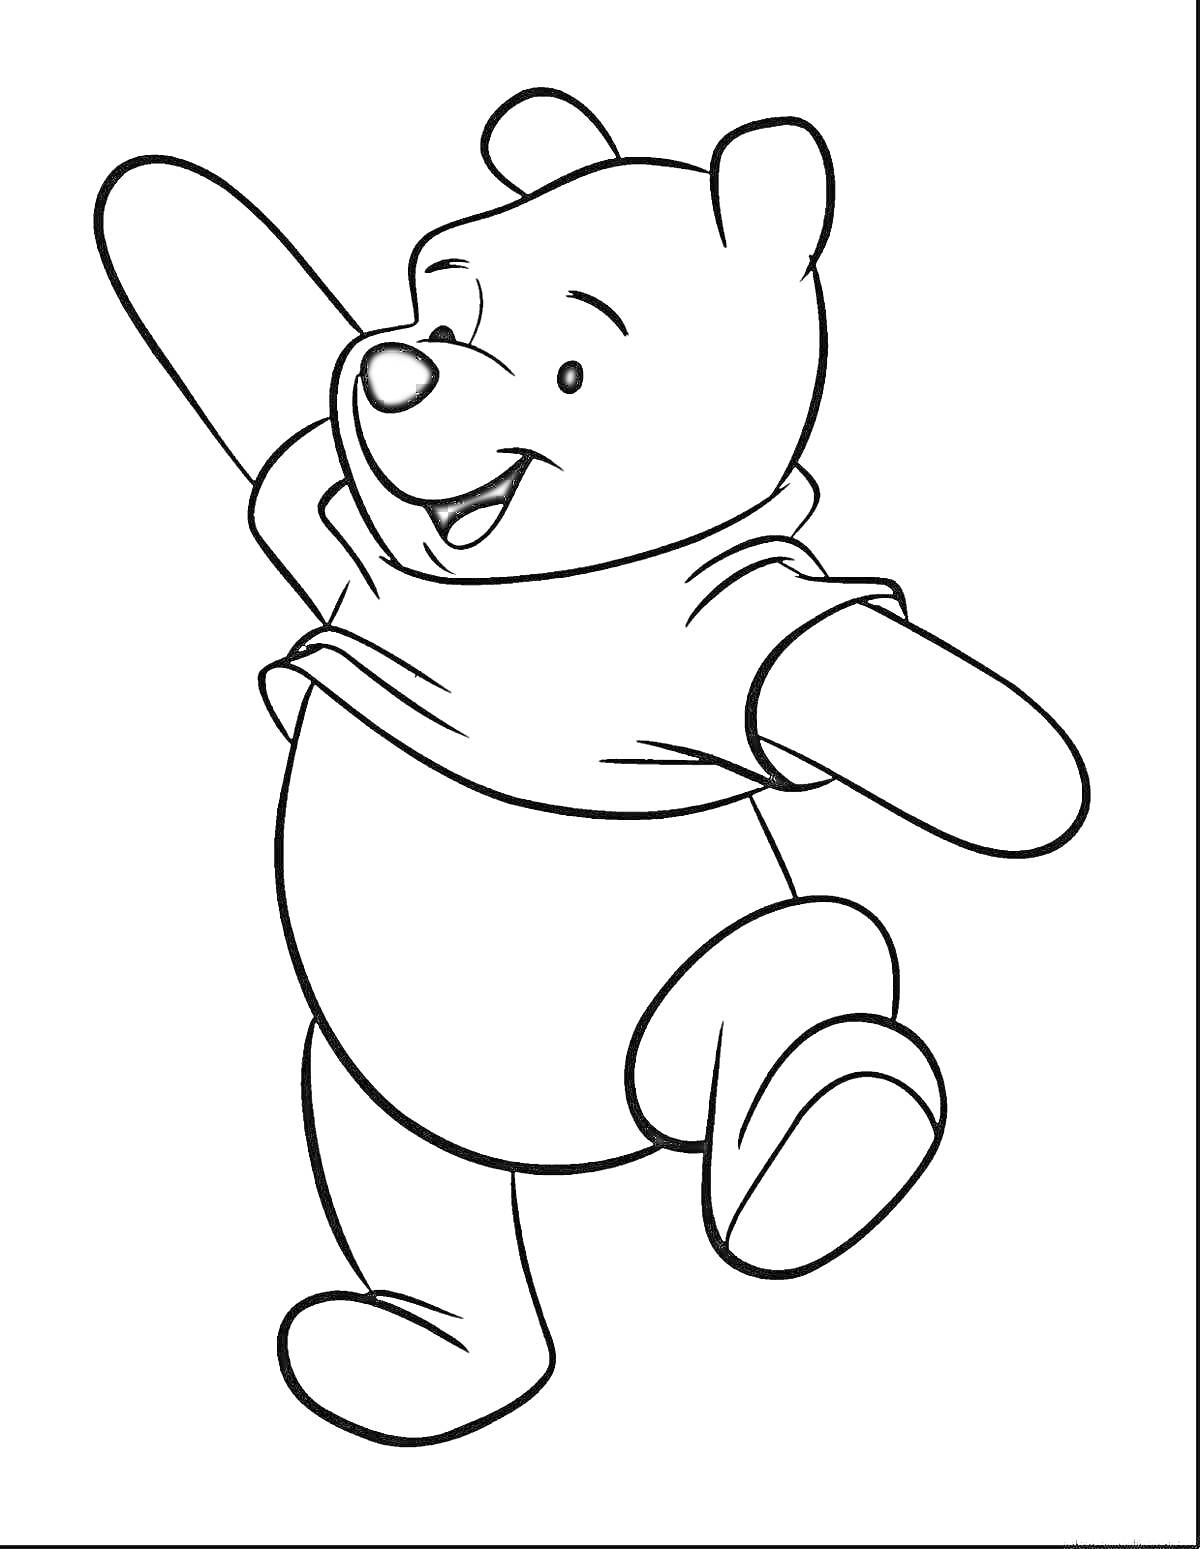 Раскраска Веселый медвежонок в футболке с поднятой лапой